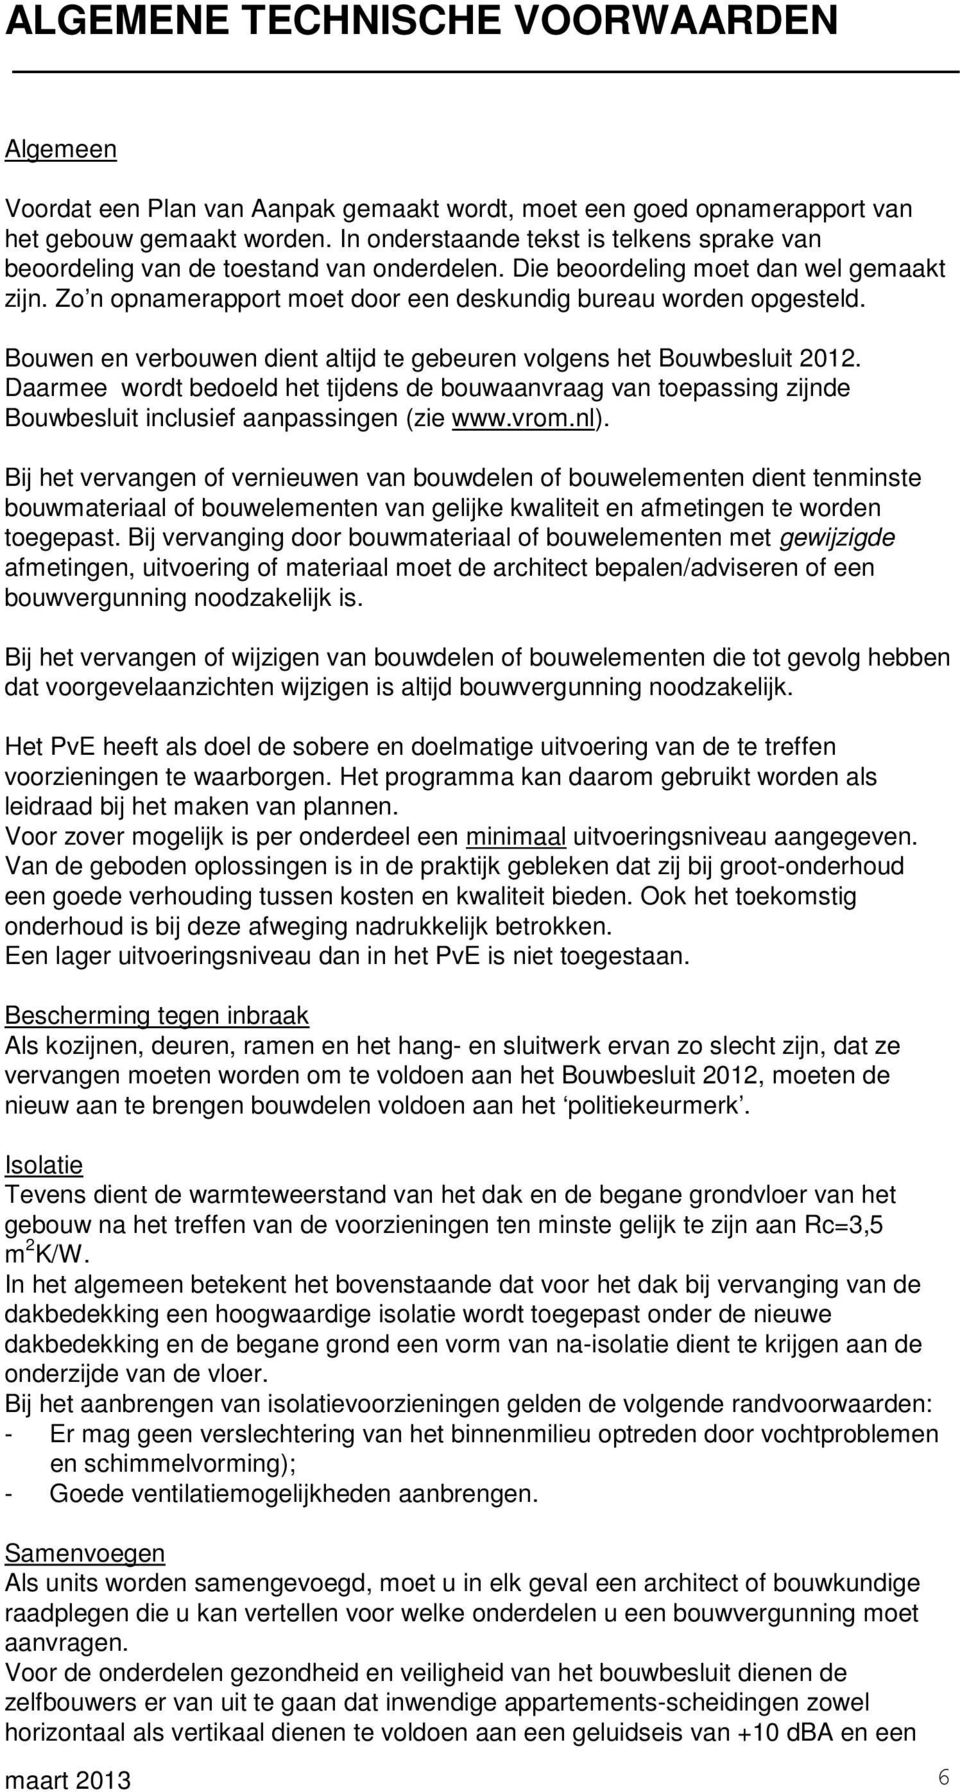 Bouwen en verbouwen dient altijd te gebeuren volgens het Bouwbesluit 2012. Daarmee wordt bedoeld het tijdens de bouwaanvraag van toepassing zijnde Bouwbesluit inclusief aanpassingen (zie www.vrom.nl).